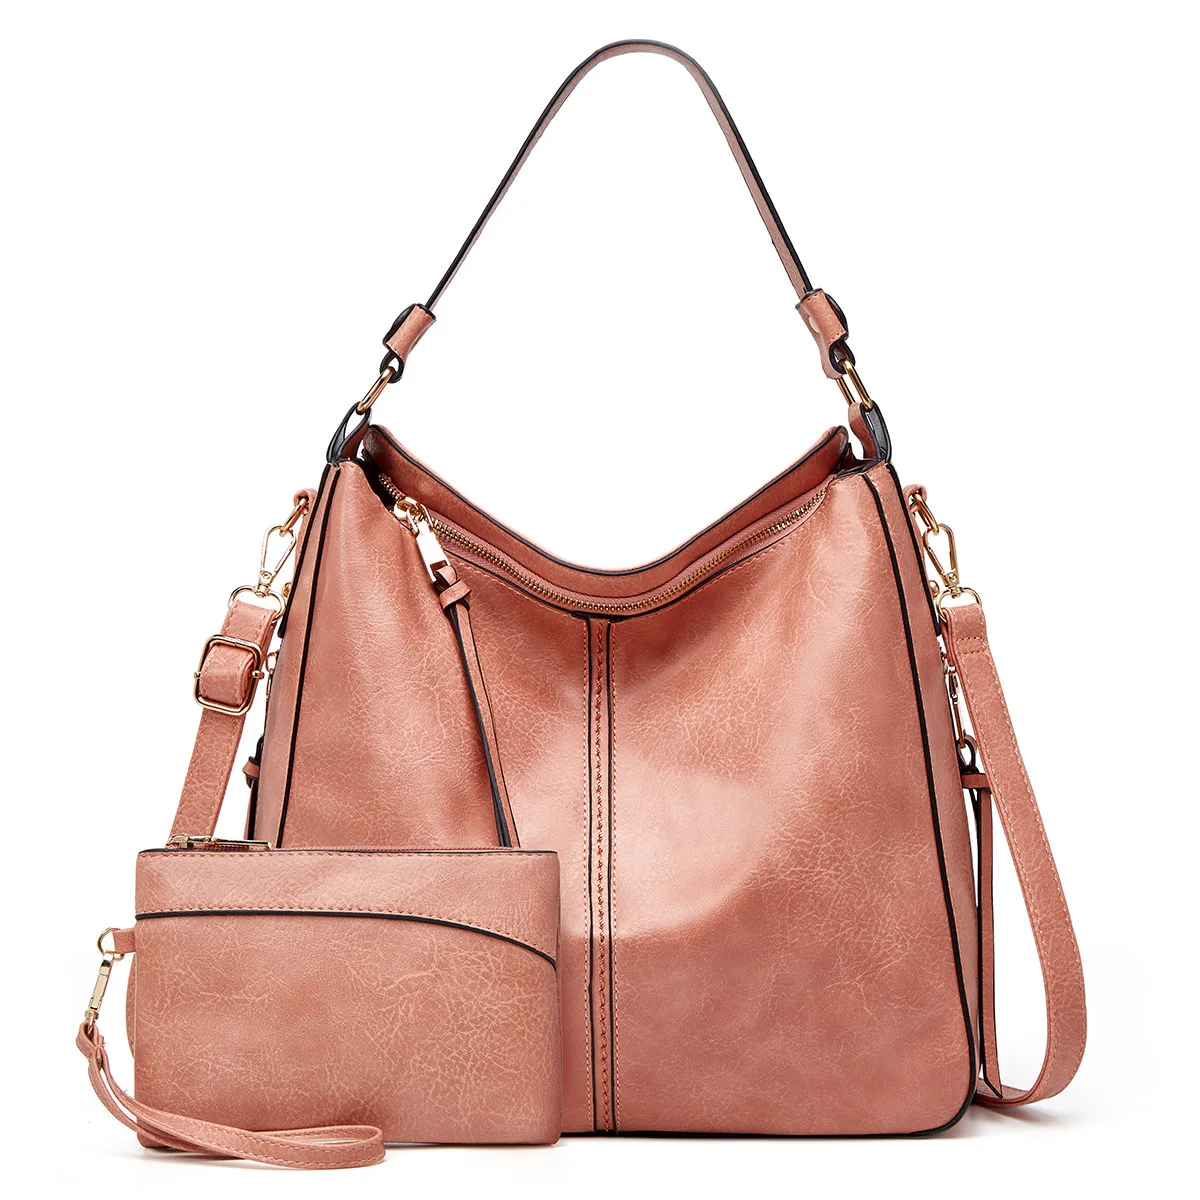 

Women Fashion Handbags Zipper Shoulder Tote Bag Top Handle Satchel Purse Set 2-pcs with wristlet